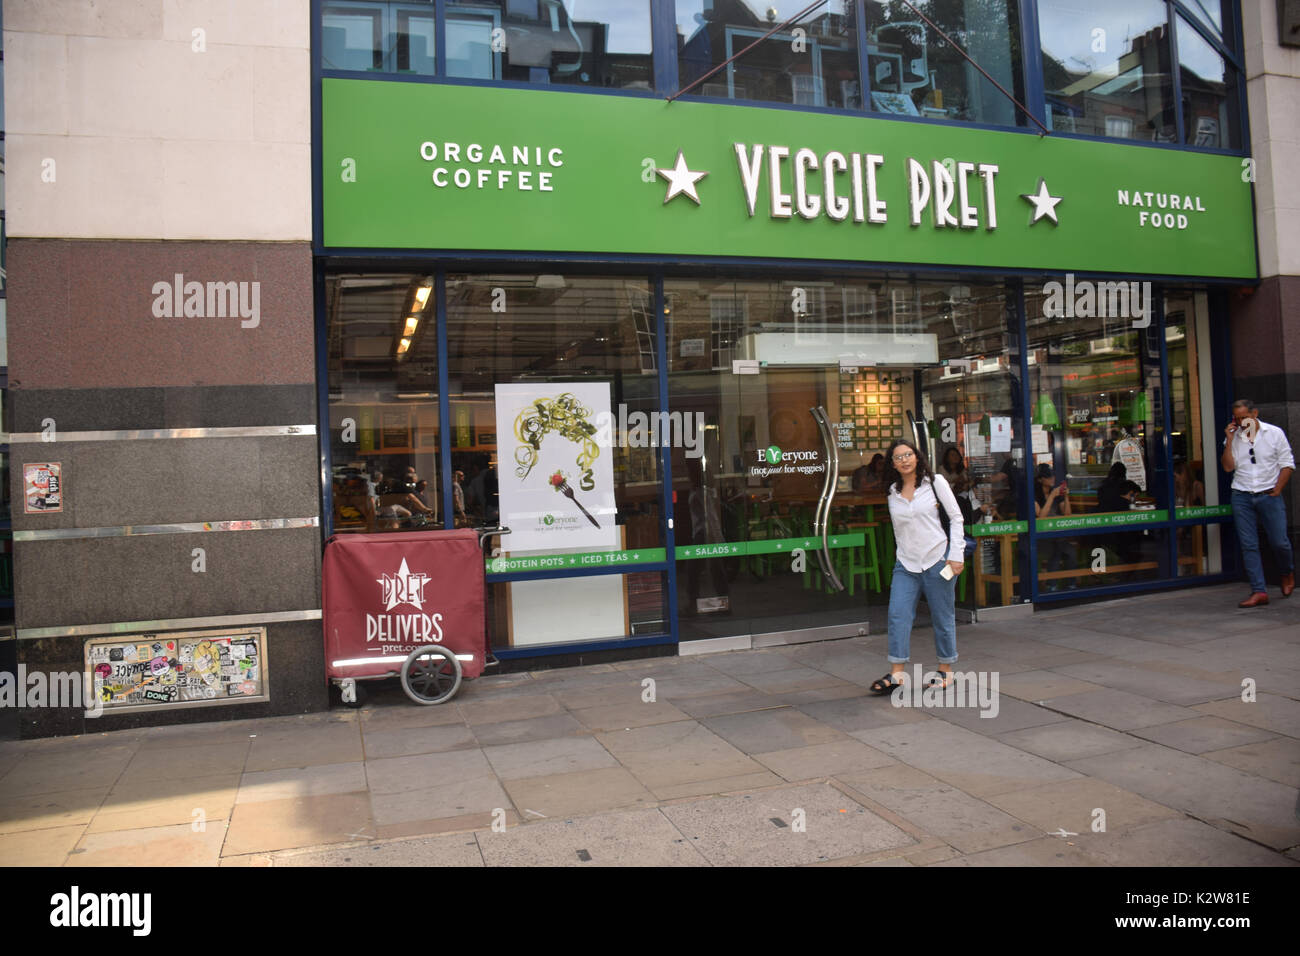 Veggie pret, nouveau-végétarien seul débouché de pret-a-manger, Londres Uk Banque D'Images